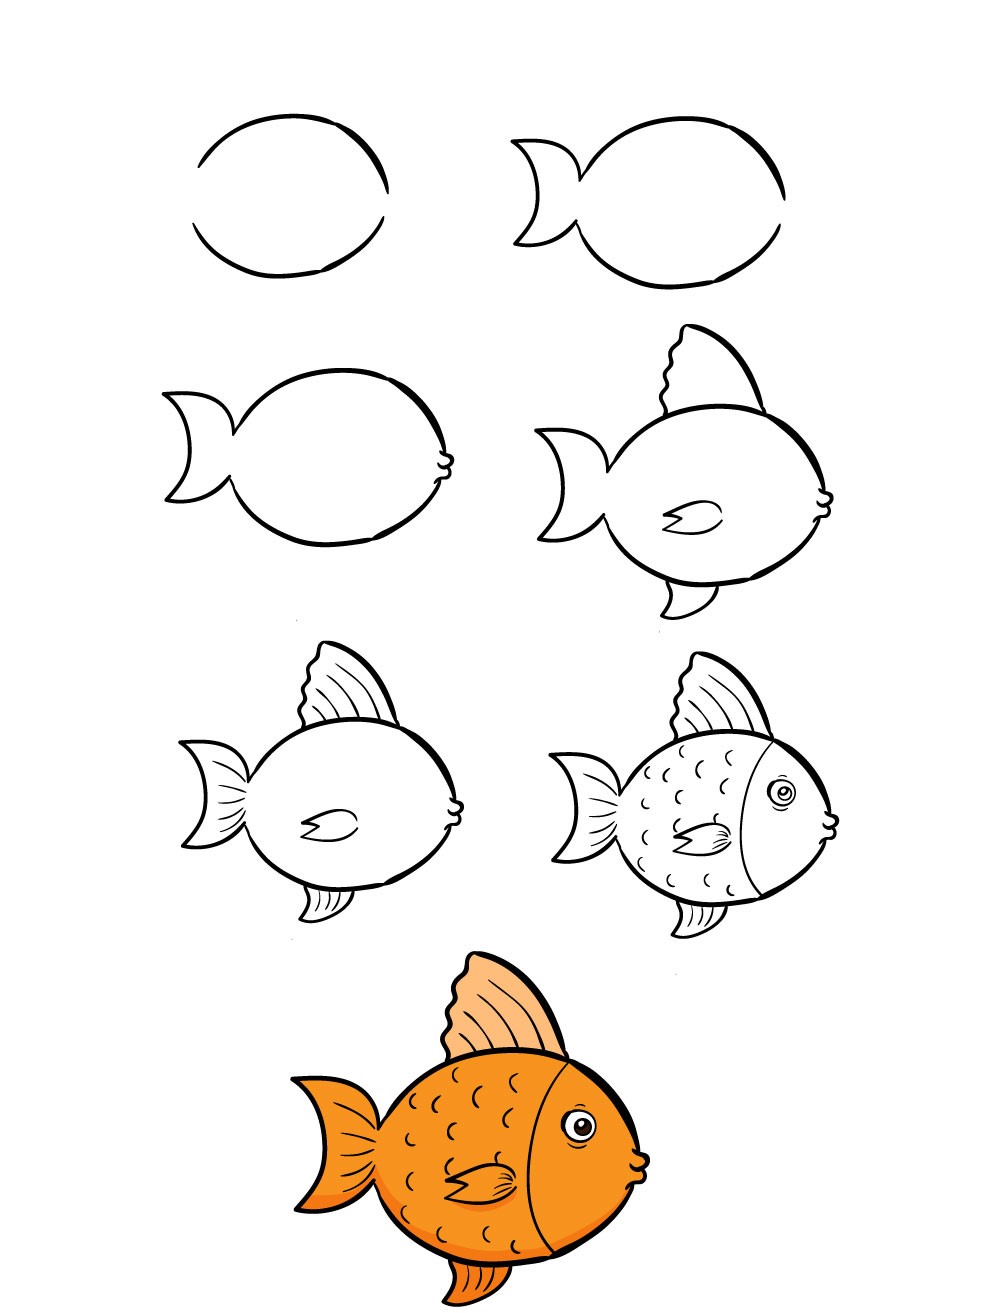 Vẽ cá cho bé là một hoạt động giúp bé khám phá và phát triển tư duy sáng tạo. Khi bé tạo ra những bức tranh về những chú cá, thế giới xung quanh sẽ trở nên sặc mùi của phép thuật và niềm vui. Hãy cùng xem hình ảnh về các bức tranh vẽ cá dễ thương cho bé nhé!